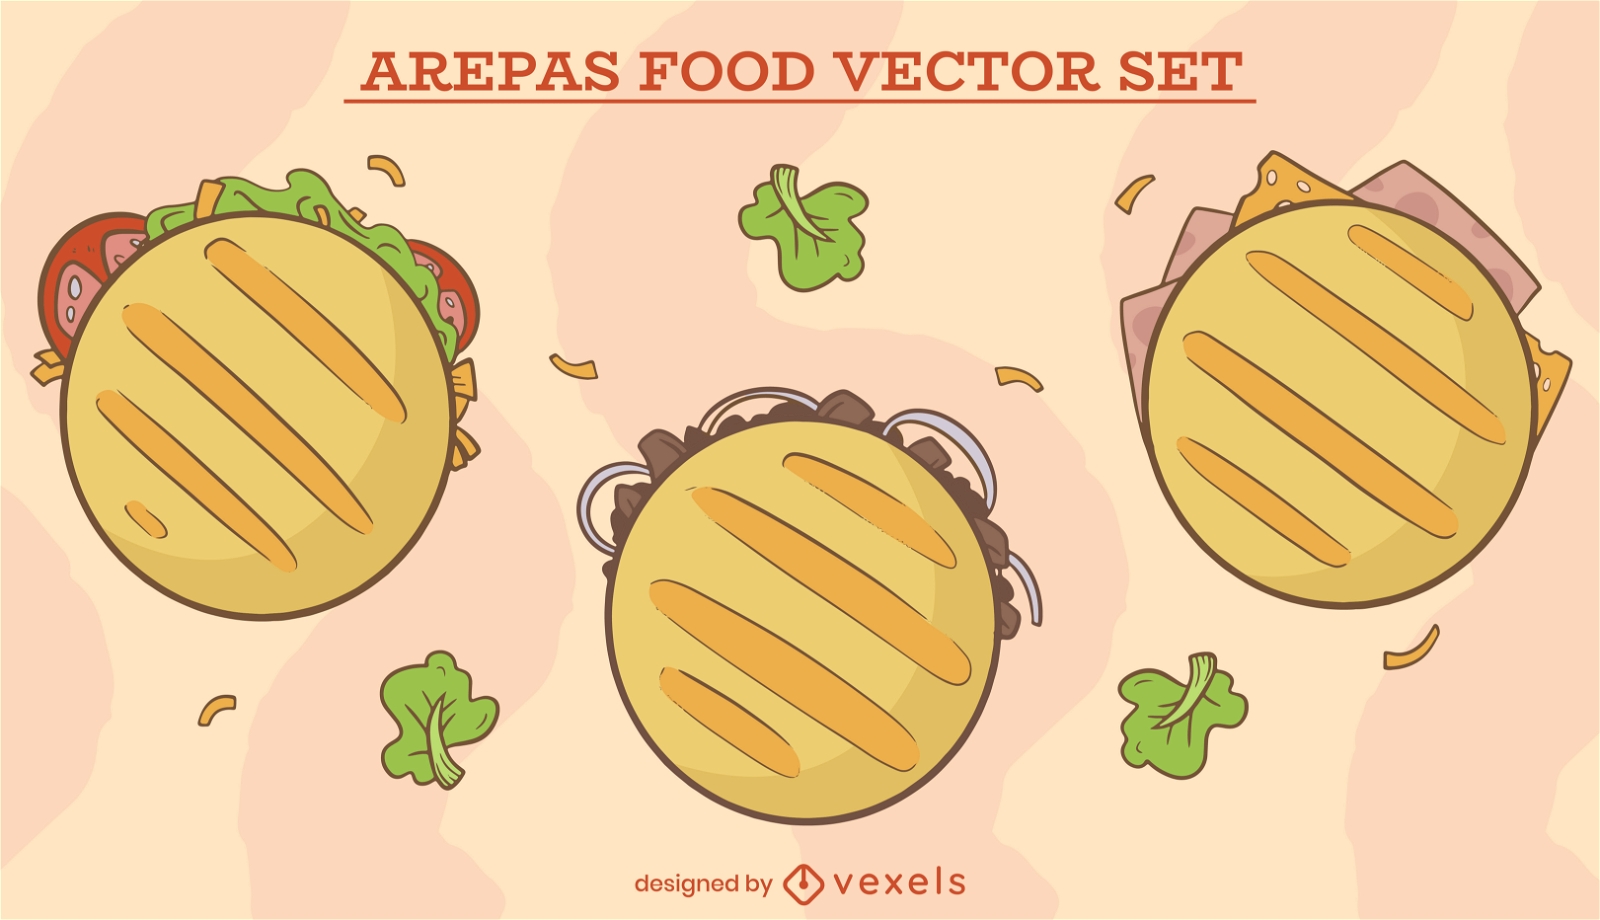 Arepas-Food-Vektor-Set